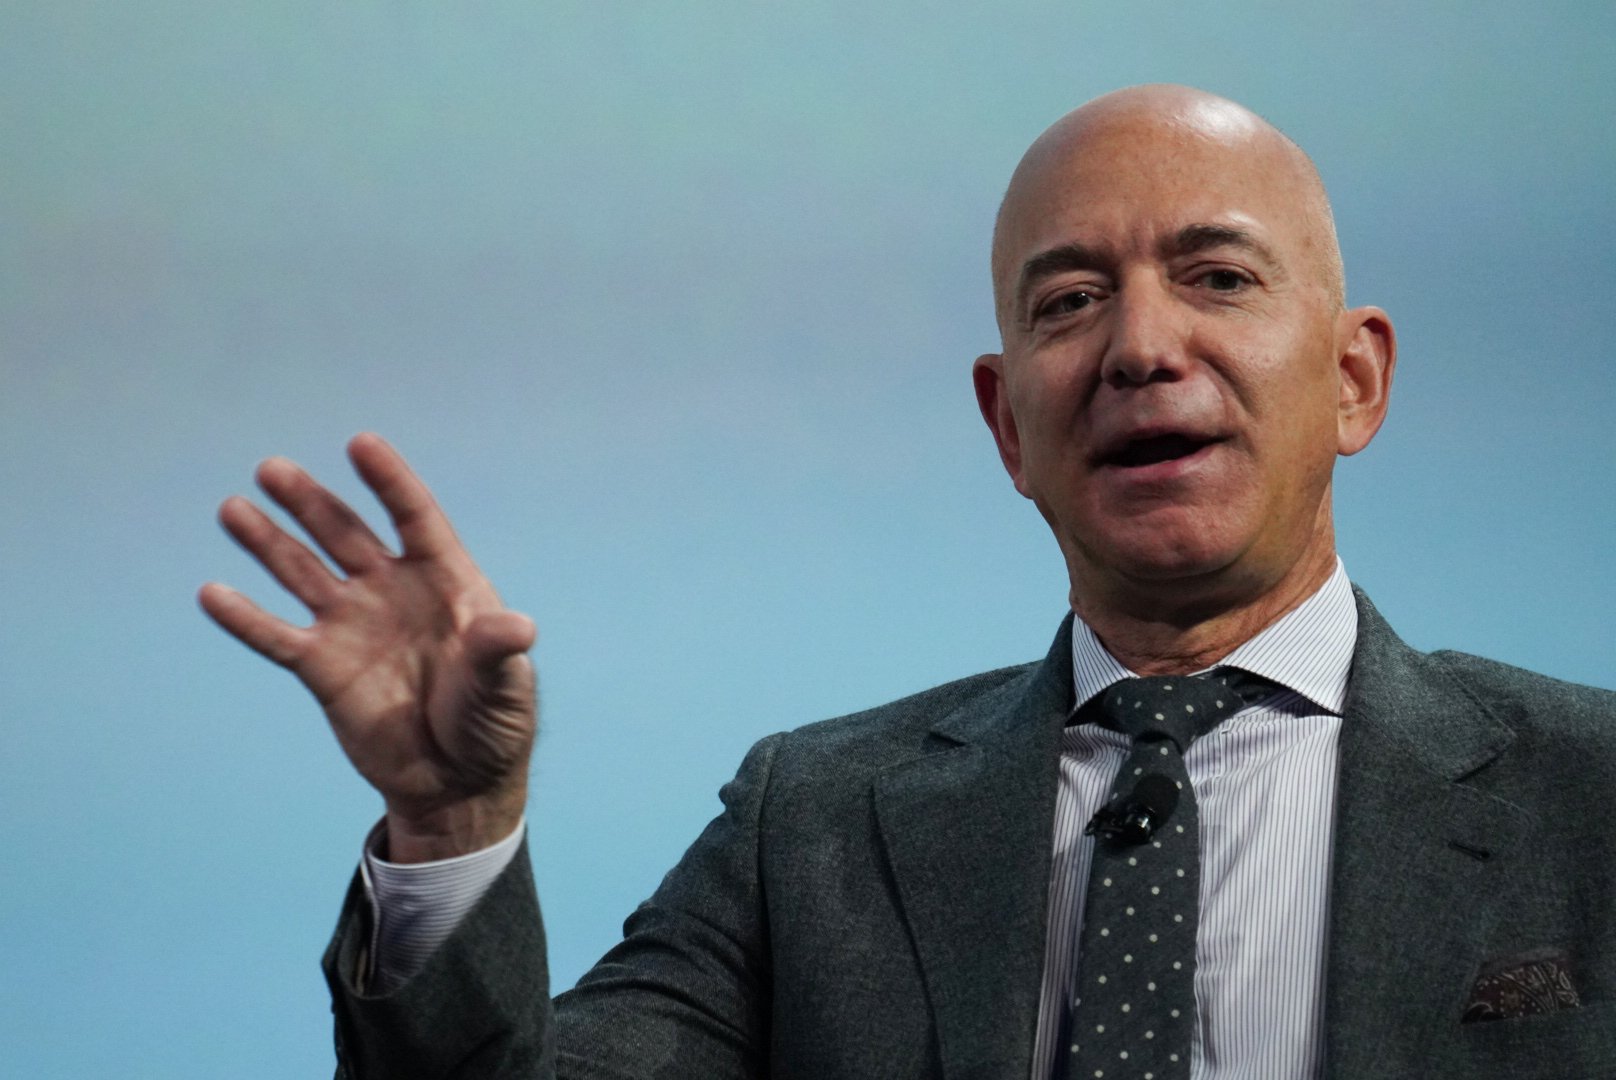  Acţiunile Amazon au atins un nivel istoric. Averea lui Jeff Bezos a urcat la 137 de miliarde de dolari